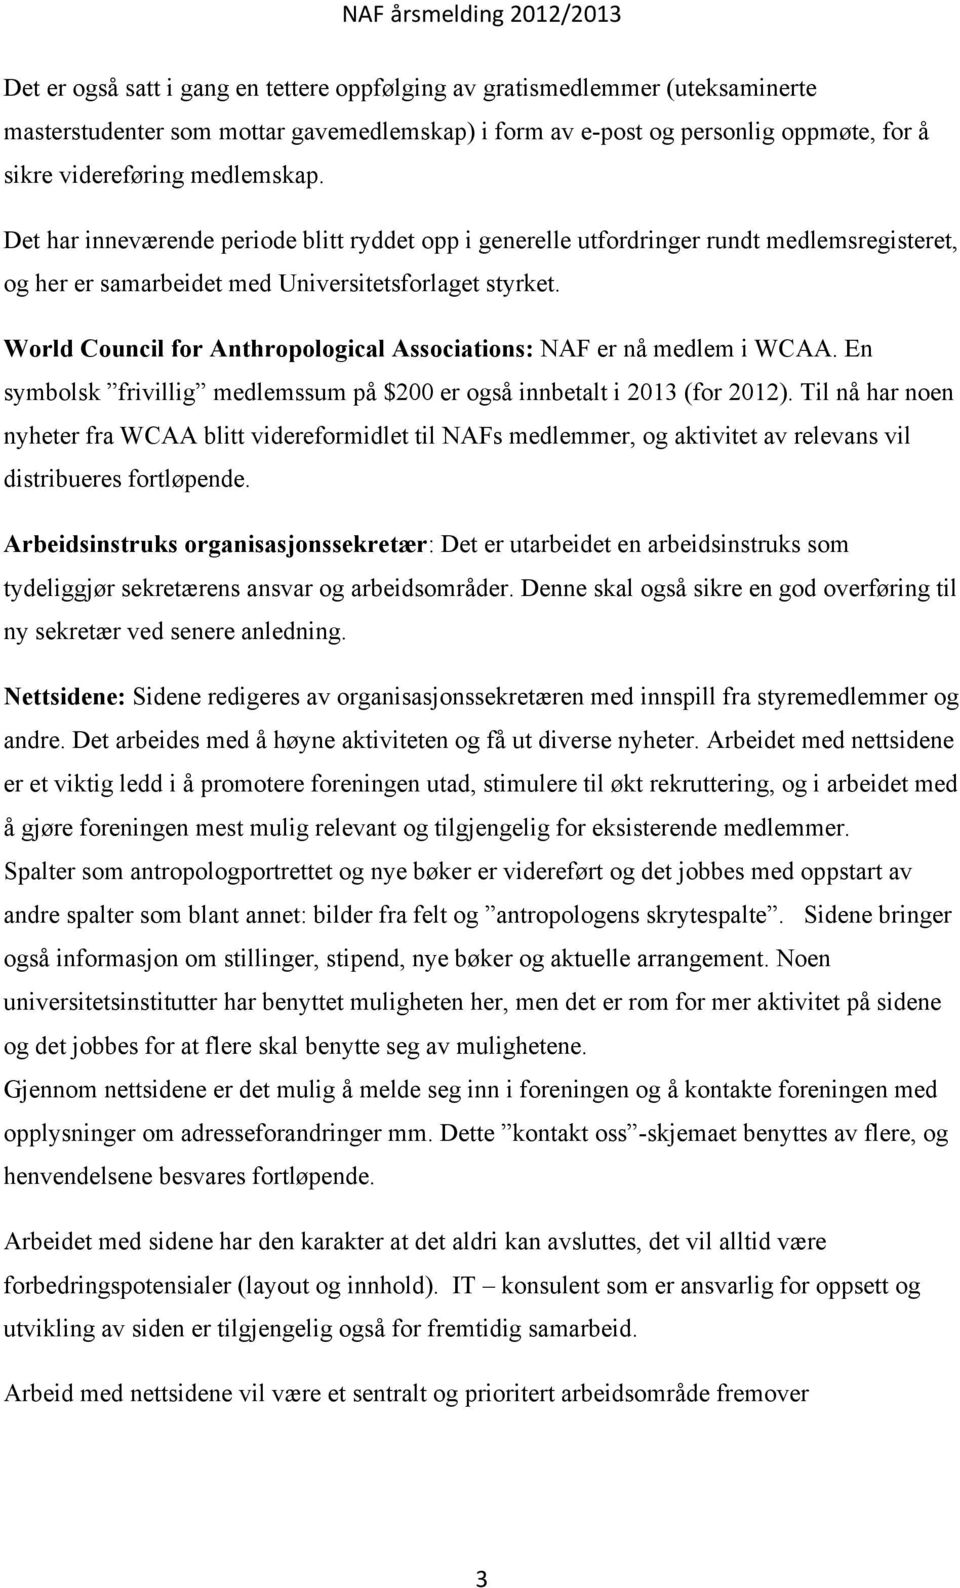 World Council for Anthropological Associations: NAF er nå medlem i WCAA. En symbolsk frivillig medlemssum på $200 er også innbetalt i 2013 (for 2012).